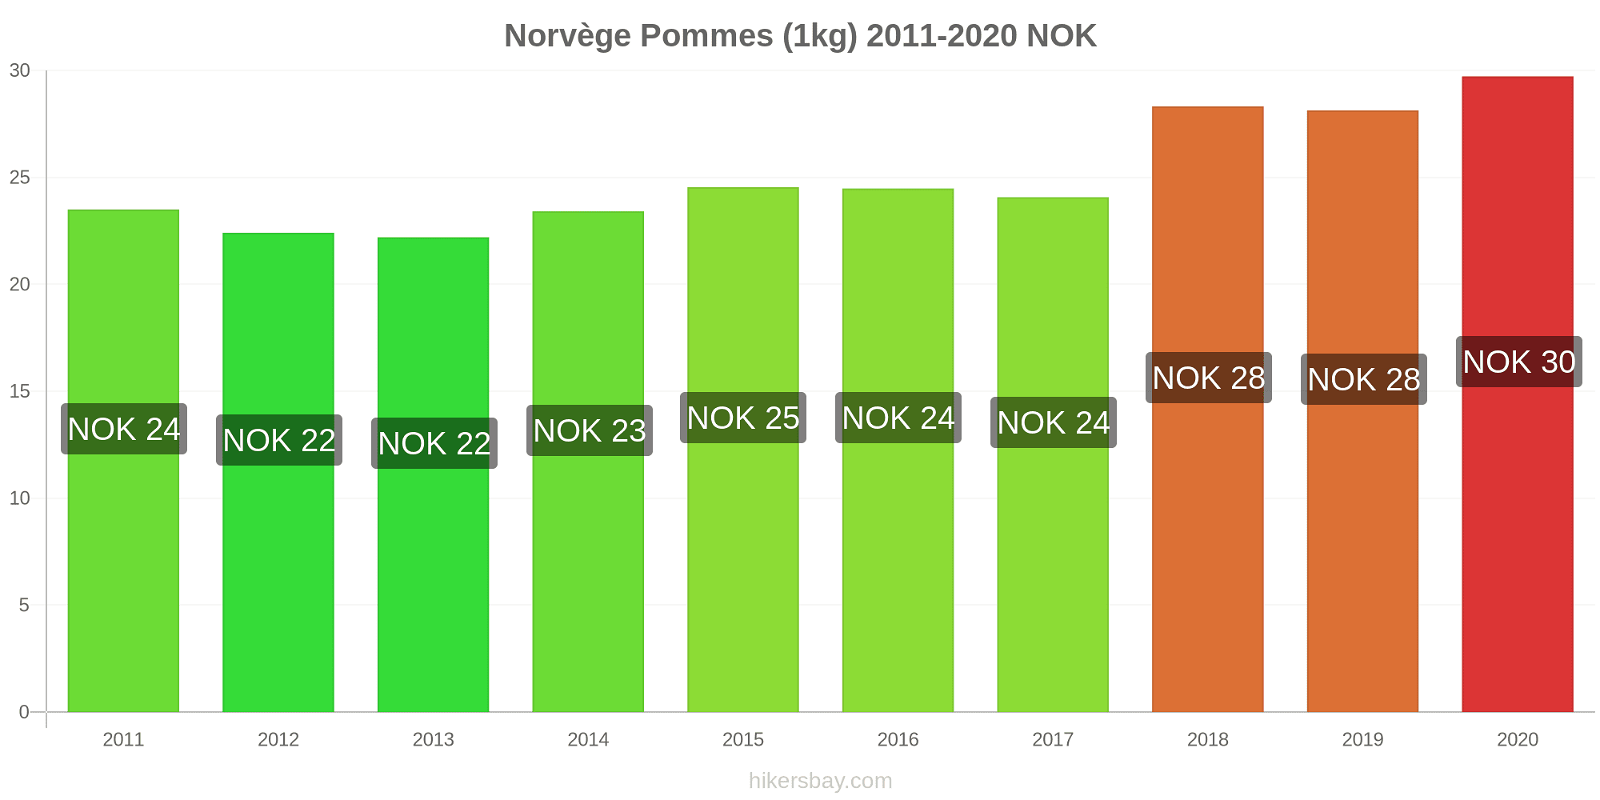 Norvège changements de prix Pommes (1kg) hikersbay.com